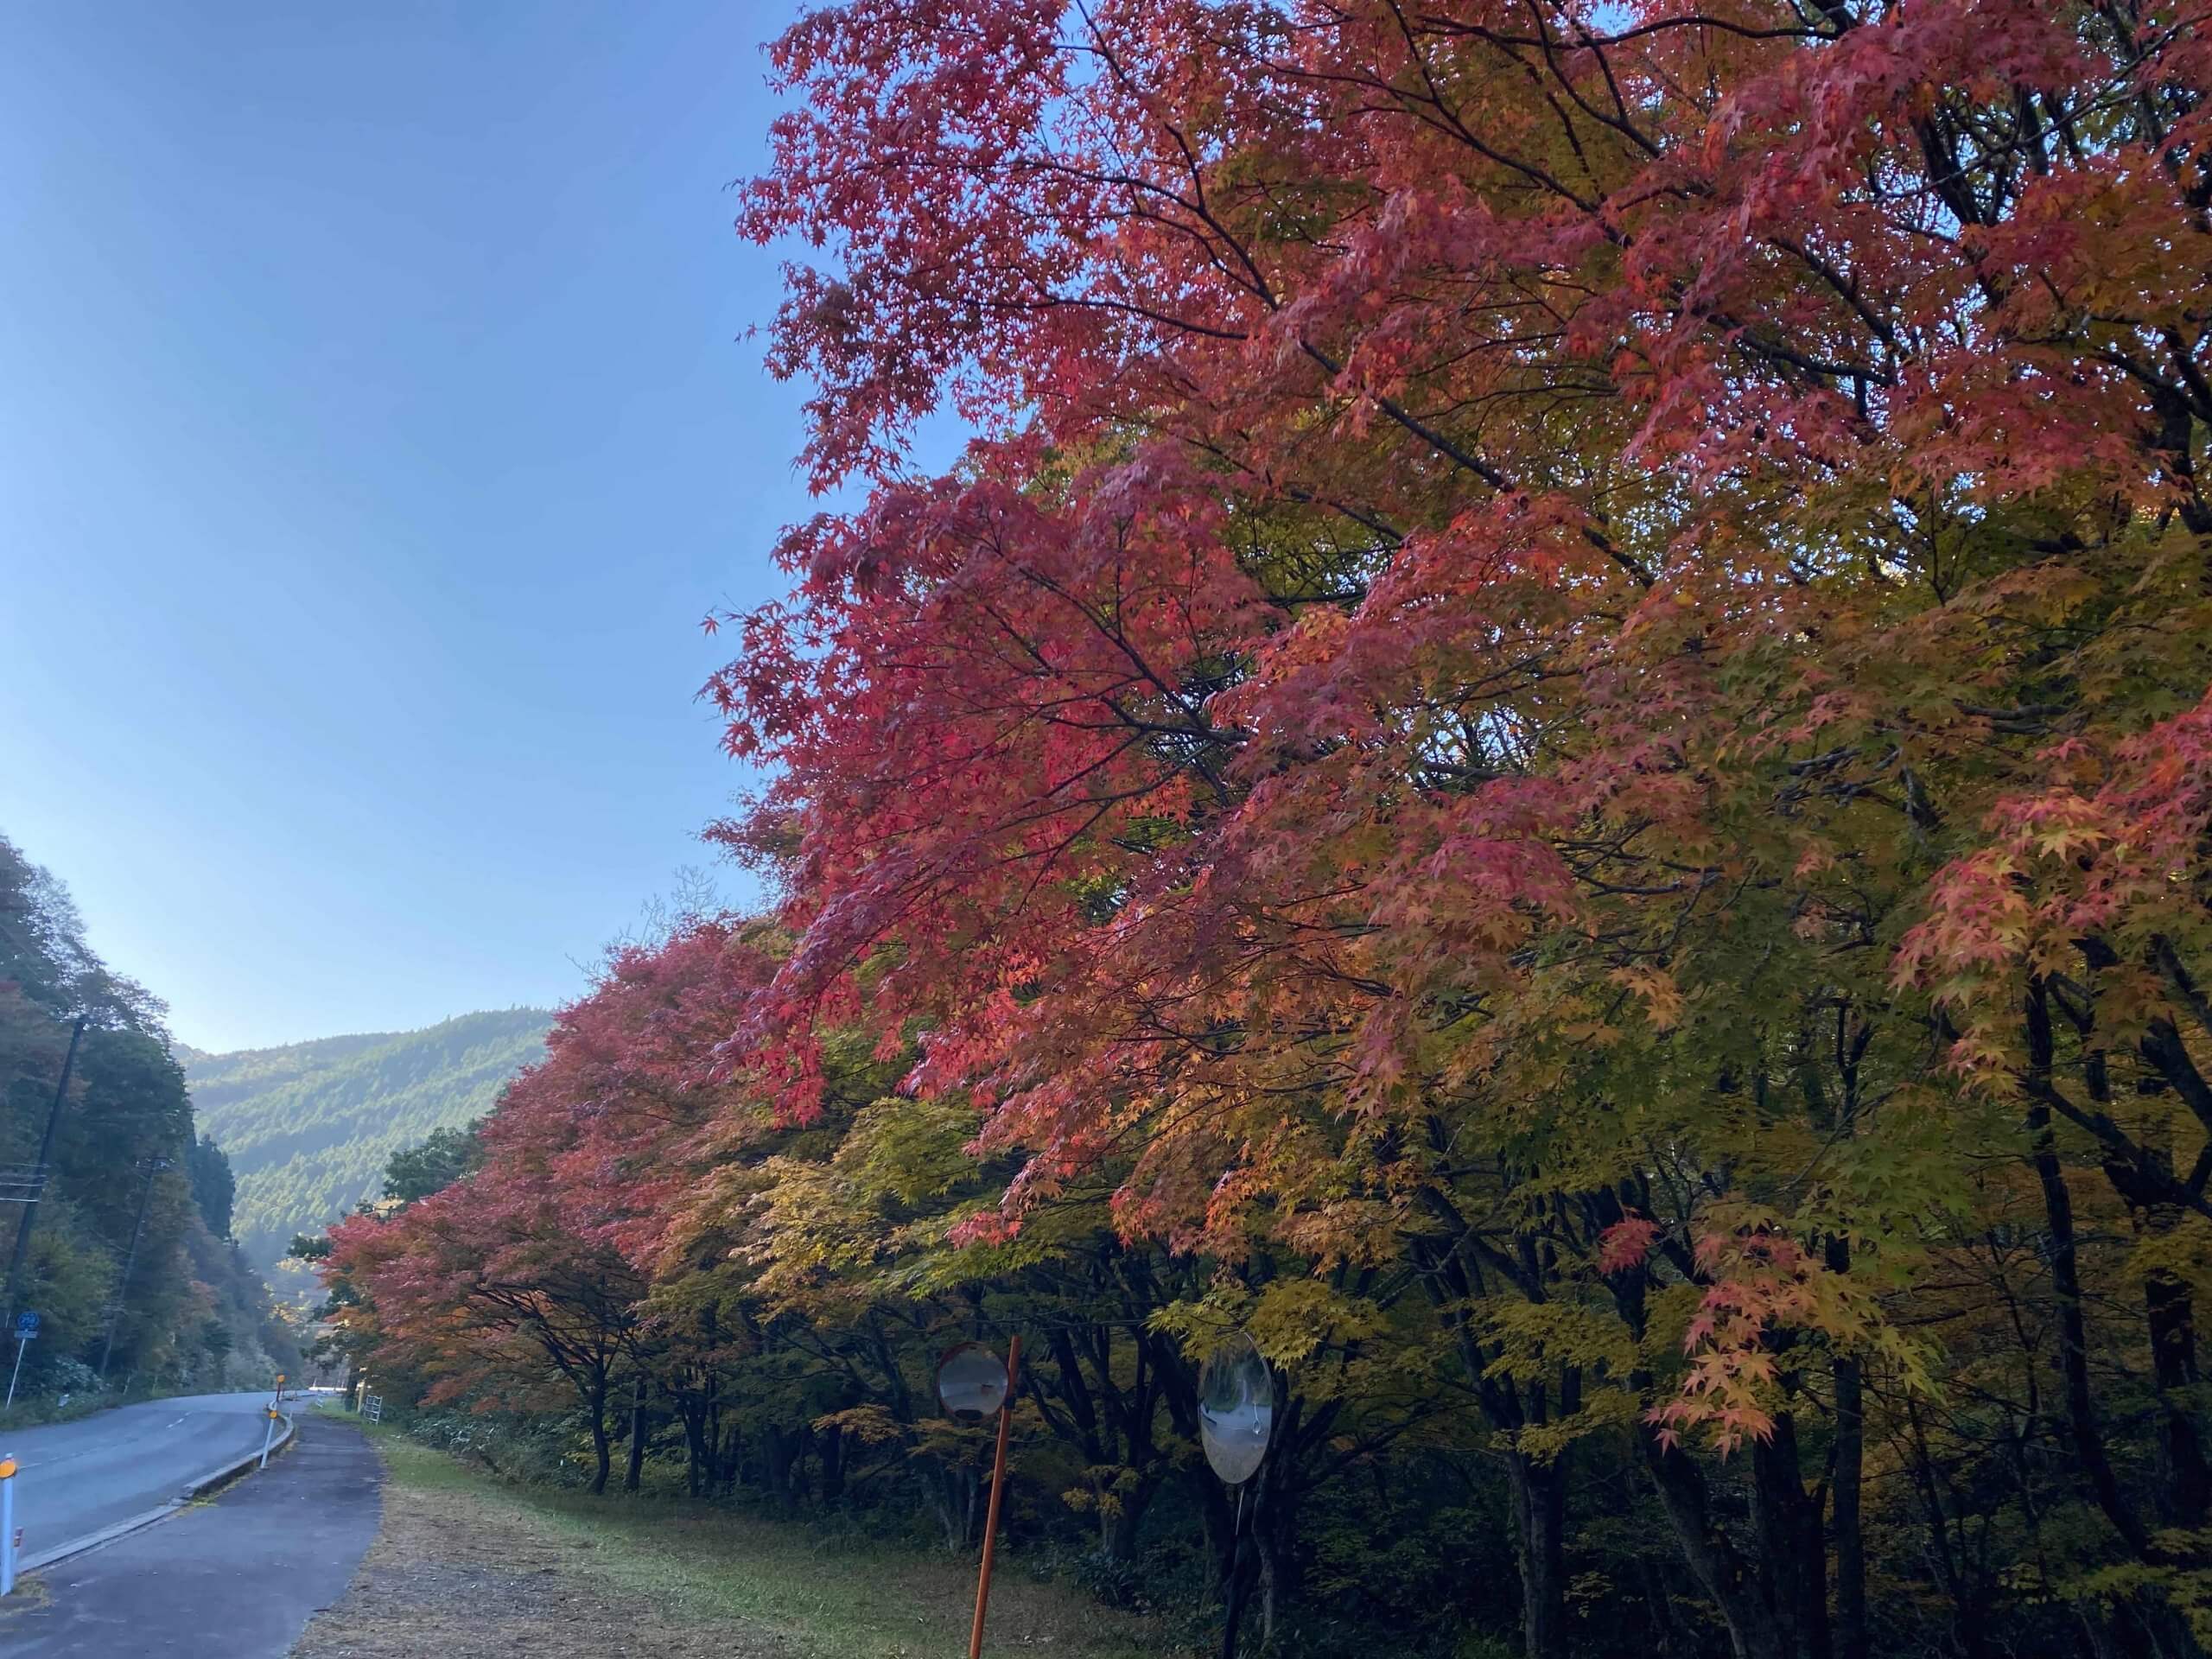 県道沿いの樹木も紅葉していた